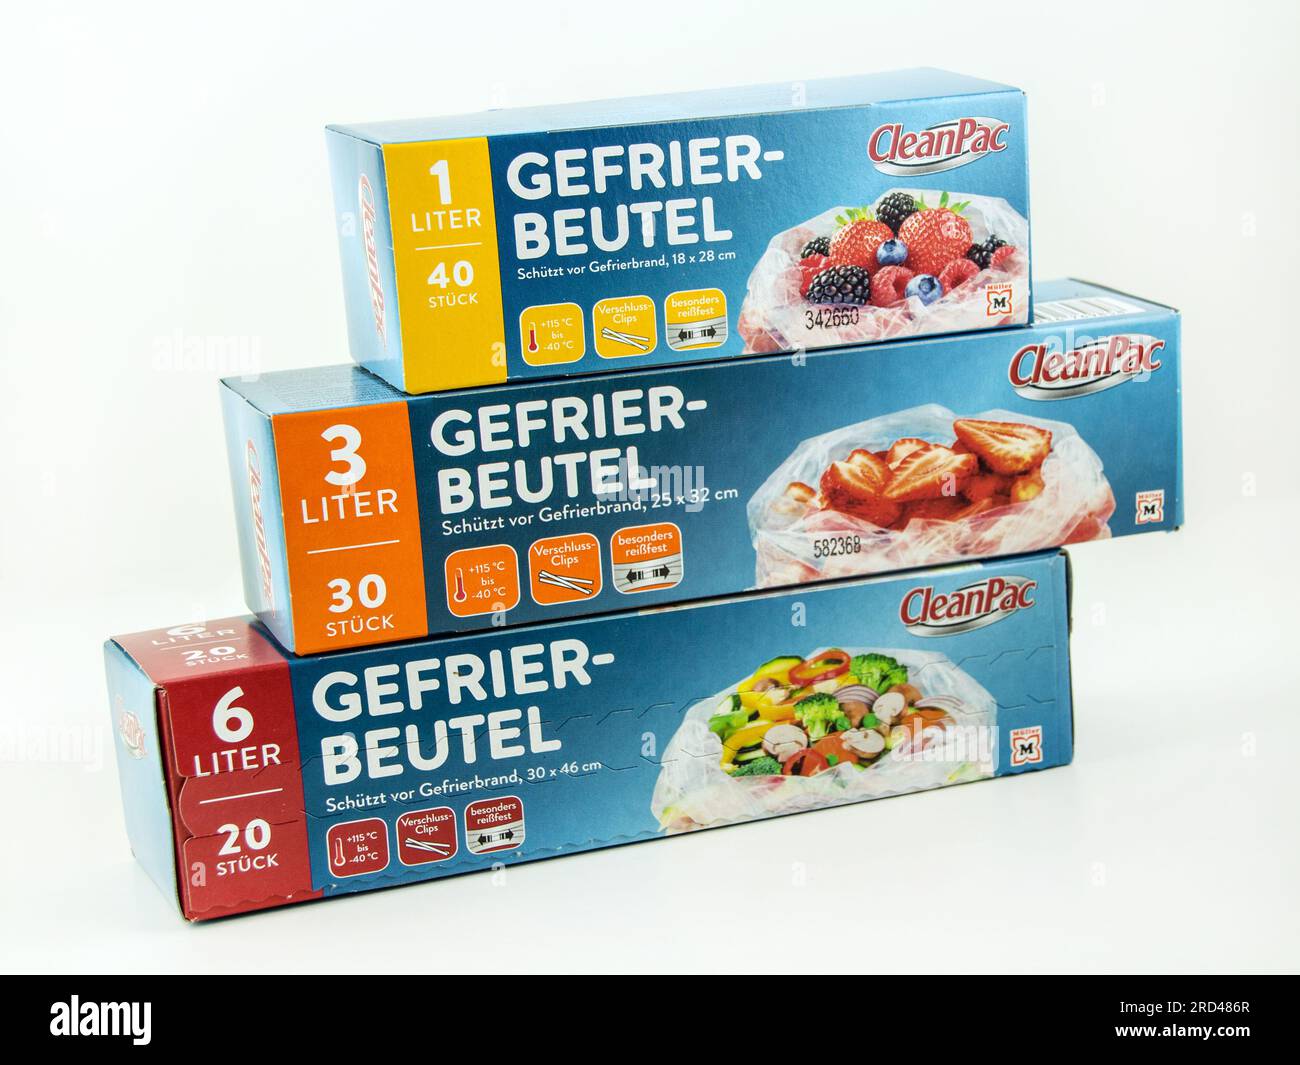 Müller Clean Pac, Gefriebeutel 1, 3, 6 Liter im Pappkarton  auf weißem Hintergrund Stock Photo